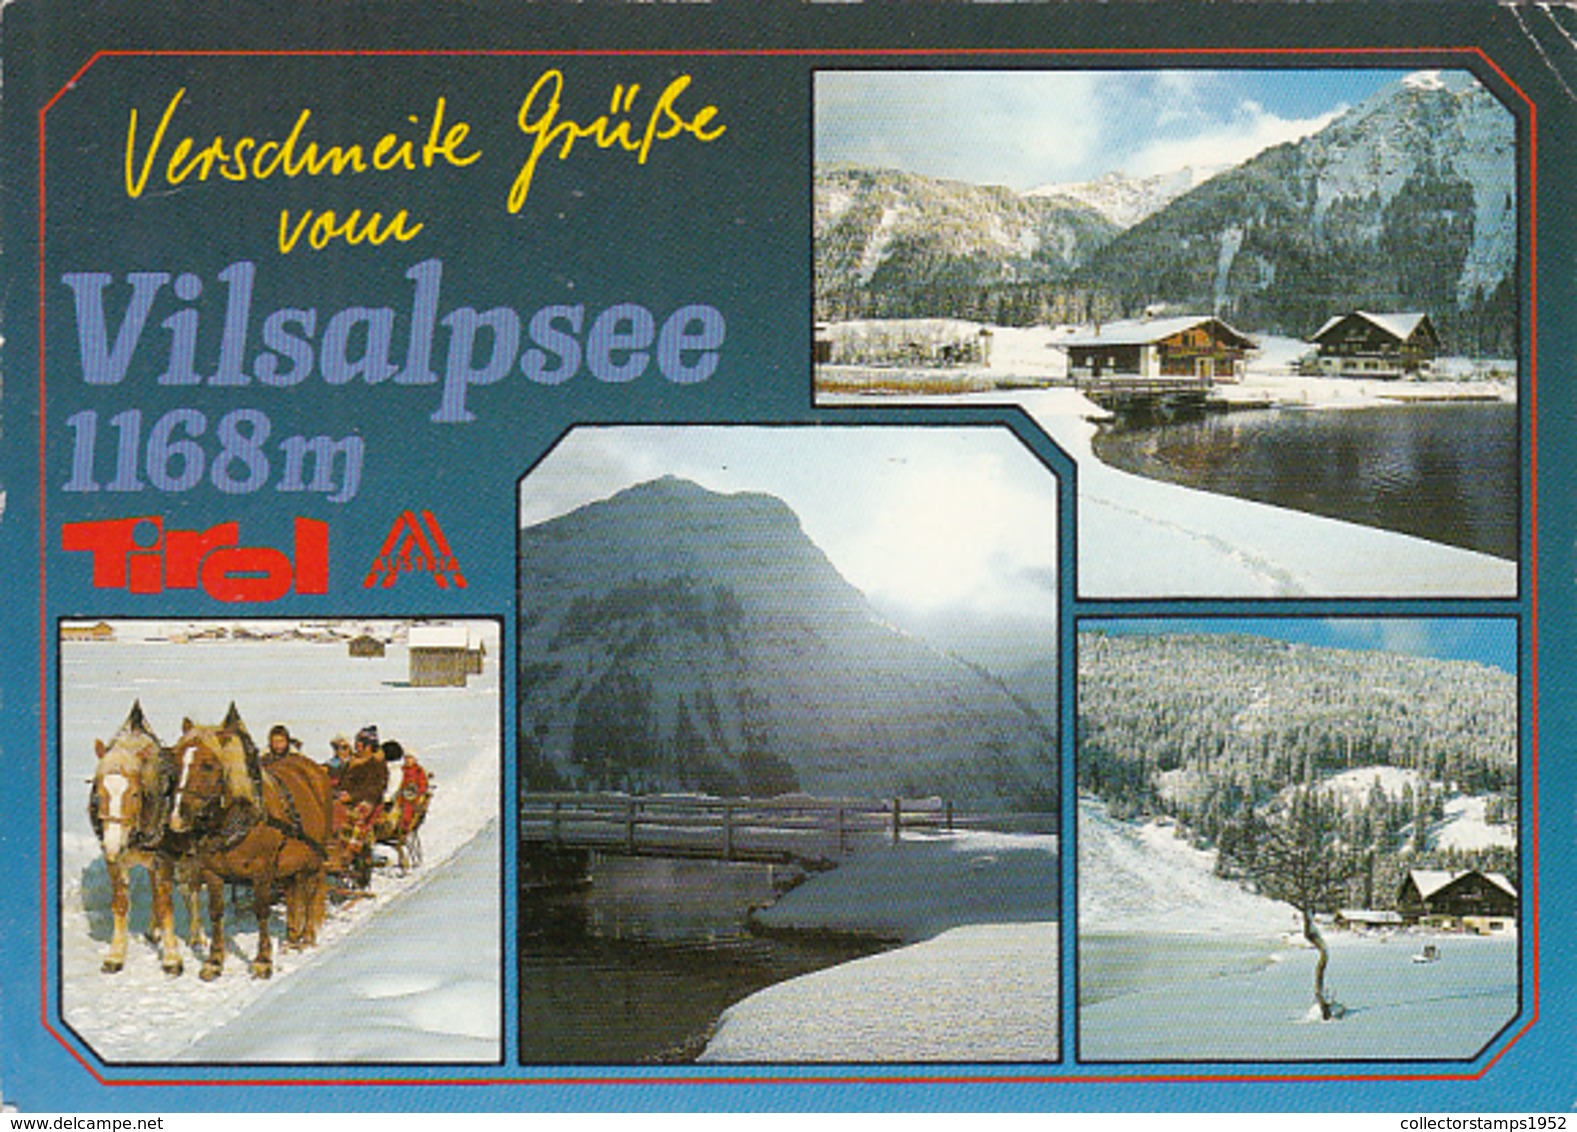 80502- VILSALPSEE LAKE, CHALET, HORSE SLED, MOUNTAINS - Vils